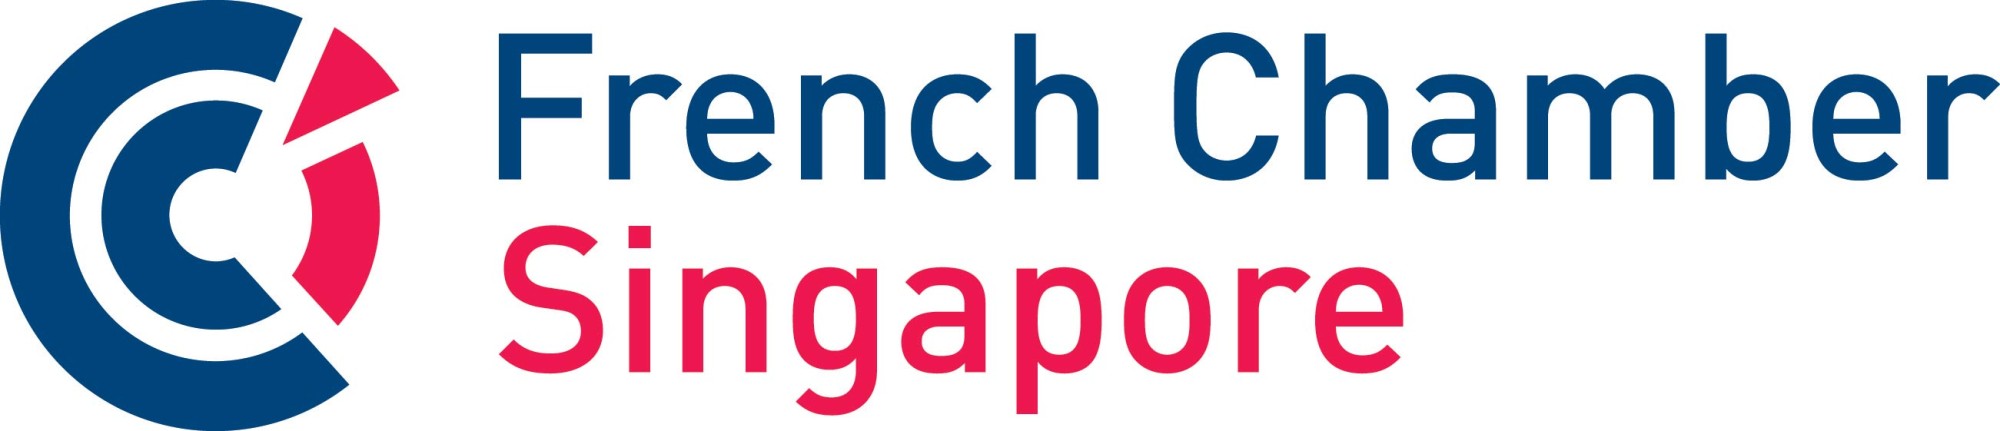 French Chamber Singapore.jpg